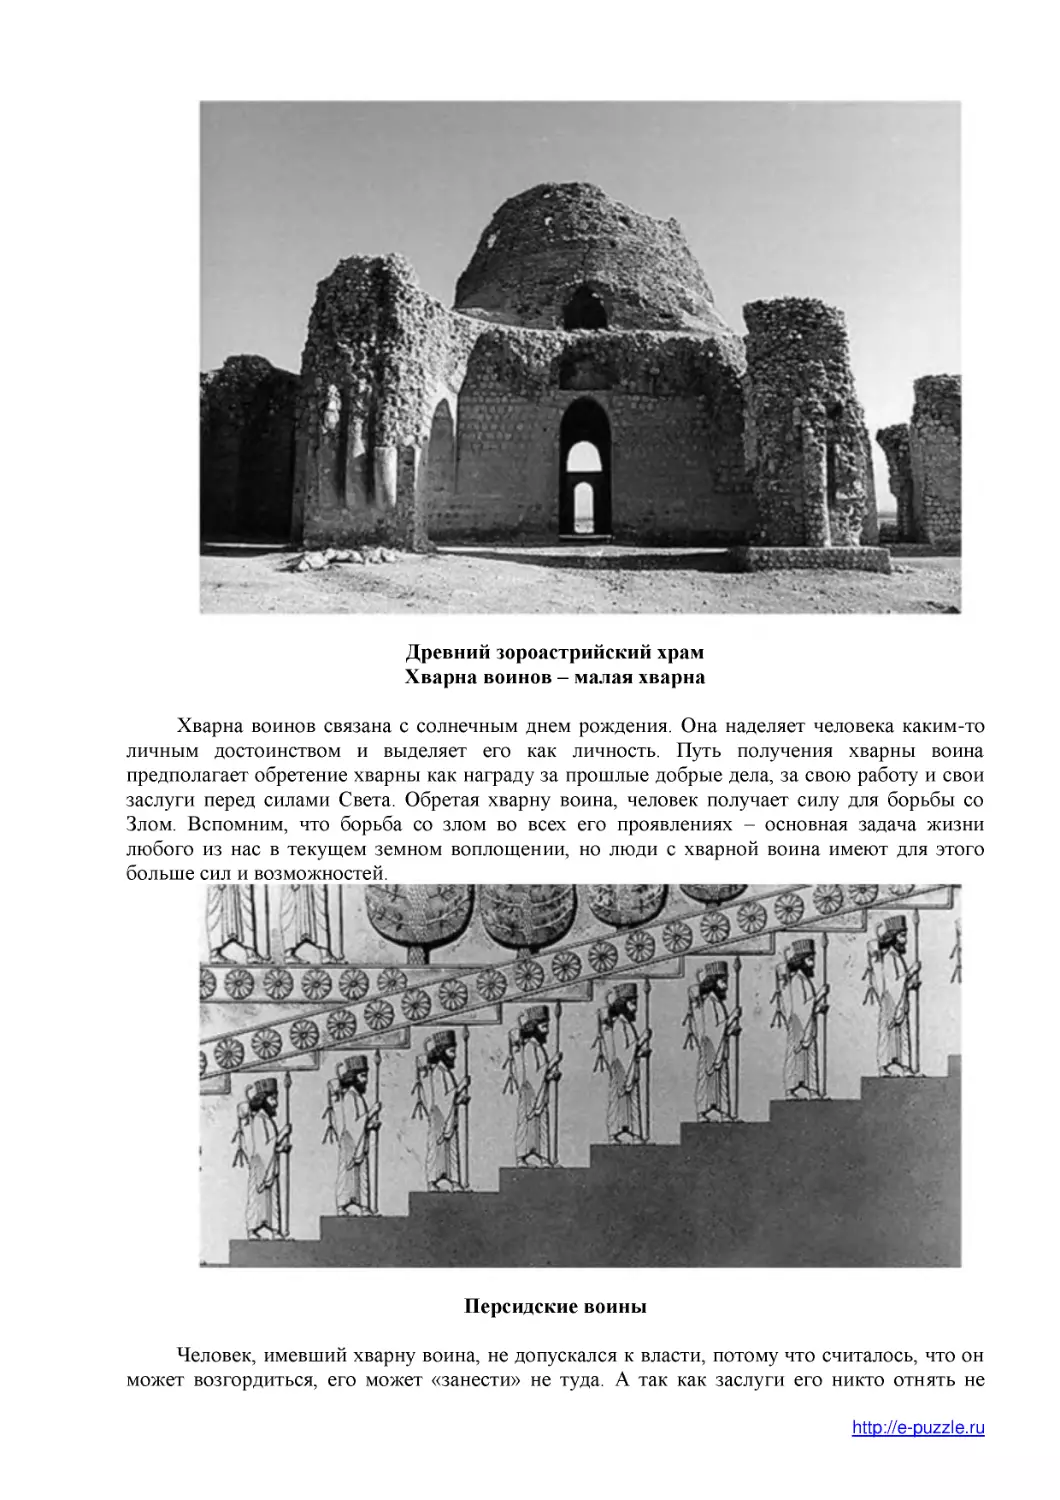 Древний зороастрийский храм
Хварна воинов – малая хварна
Персидские воины